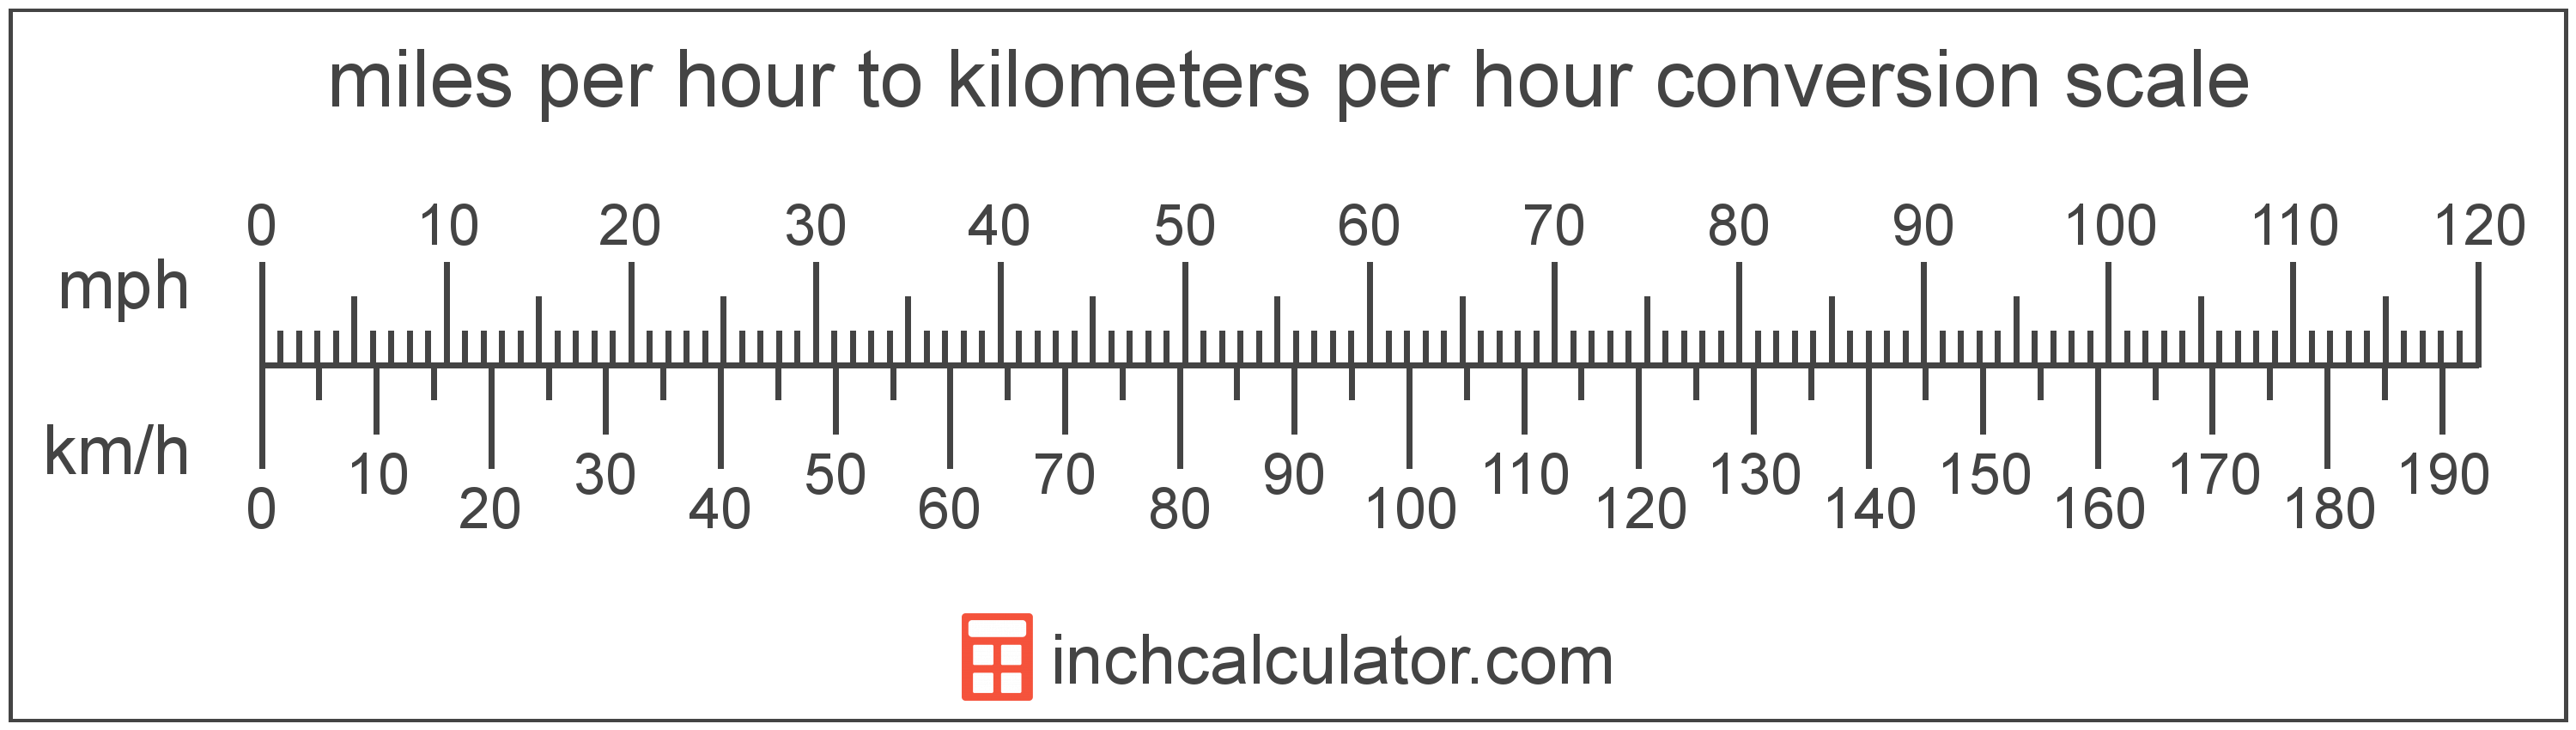 Tableau Conversion Km H En Min Km mph to kph Conversion (Miles per Hour To Kilometers per Hour)